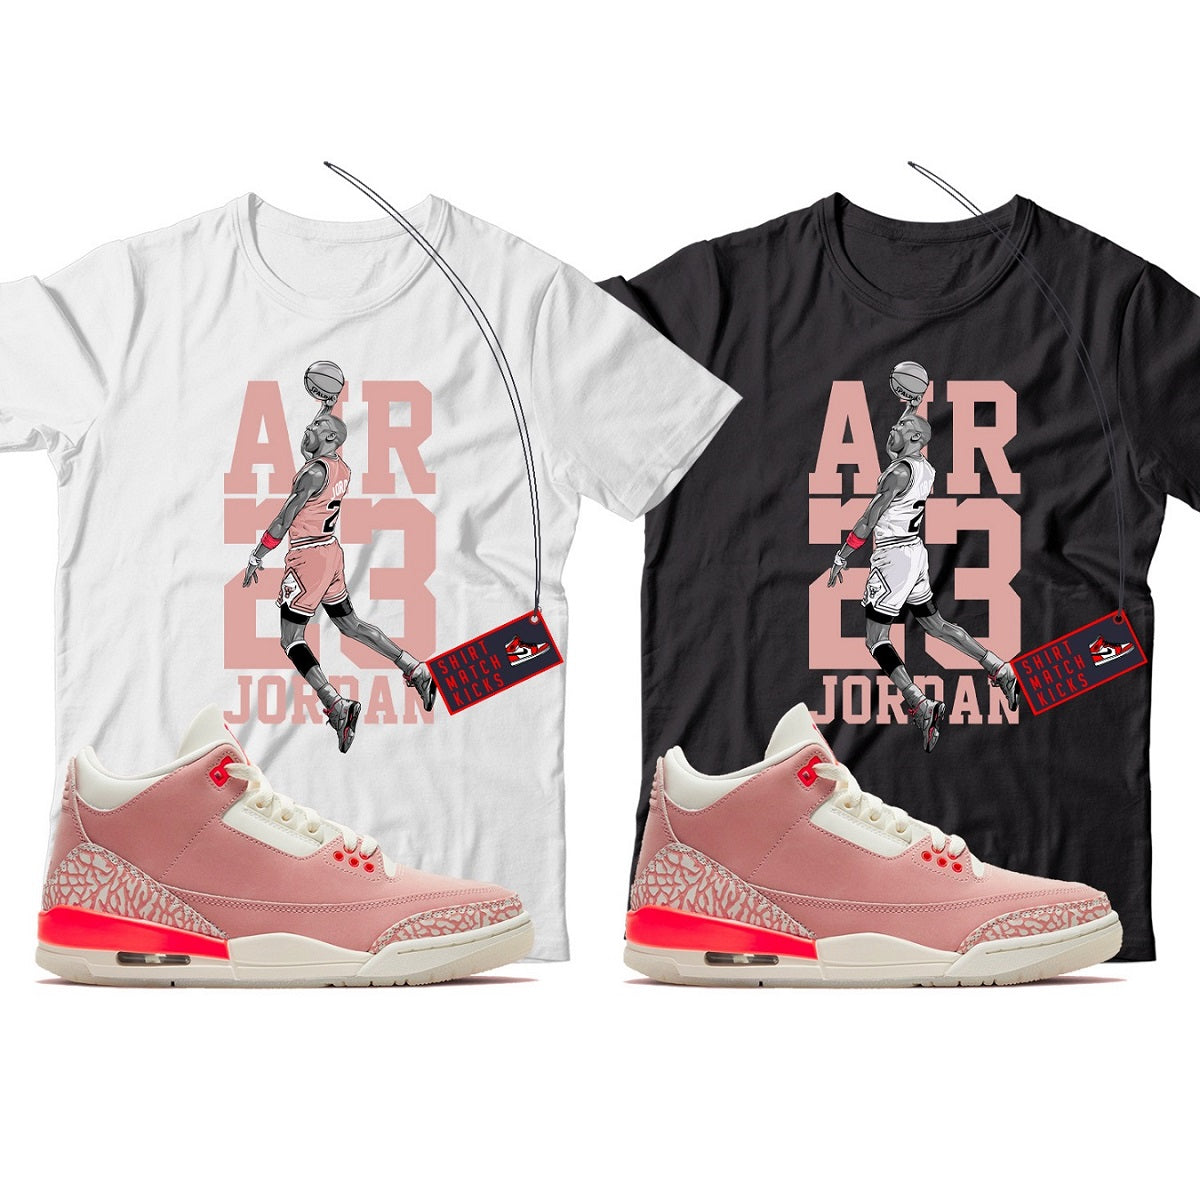 MJ T-Shirt Match Jordan 3 Rust Pink